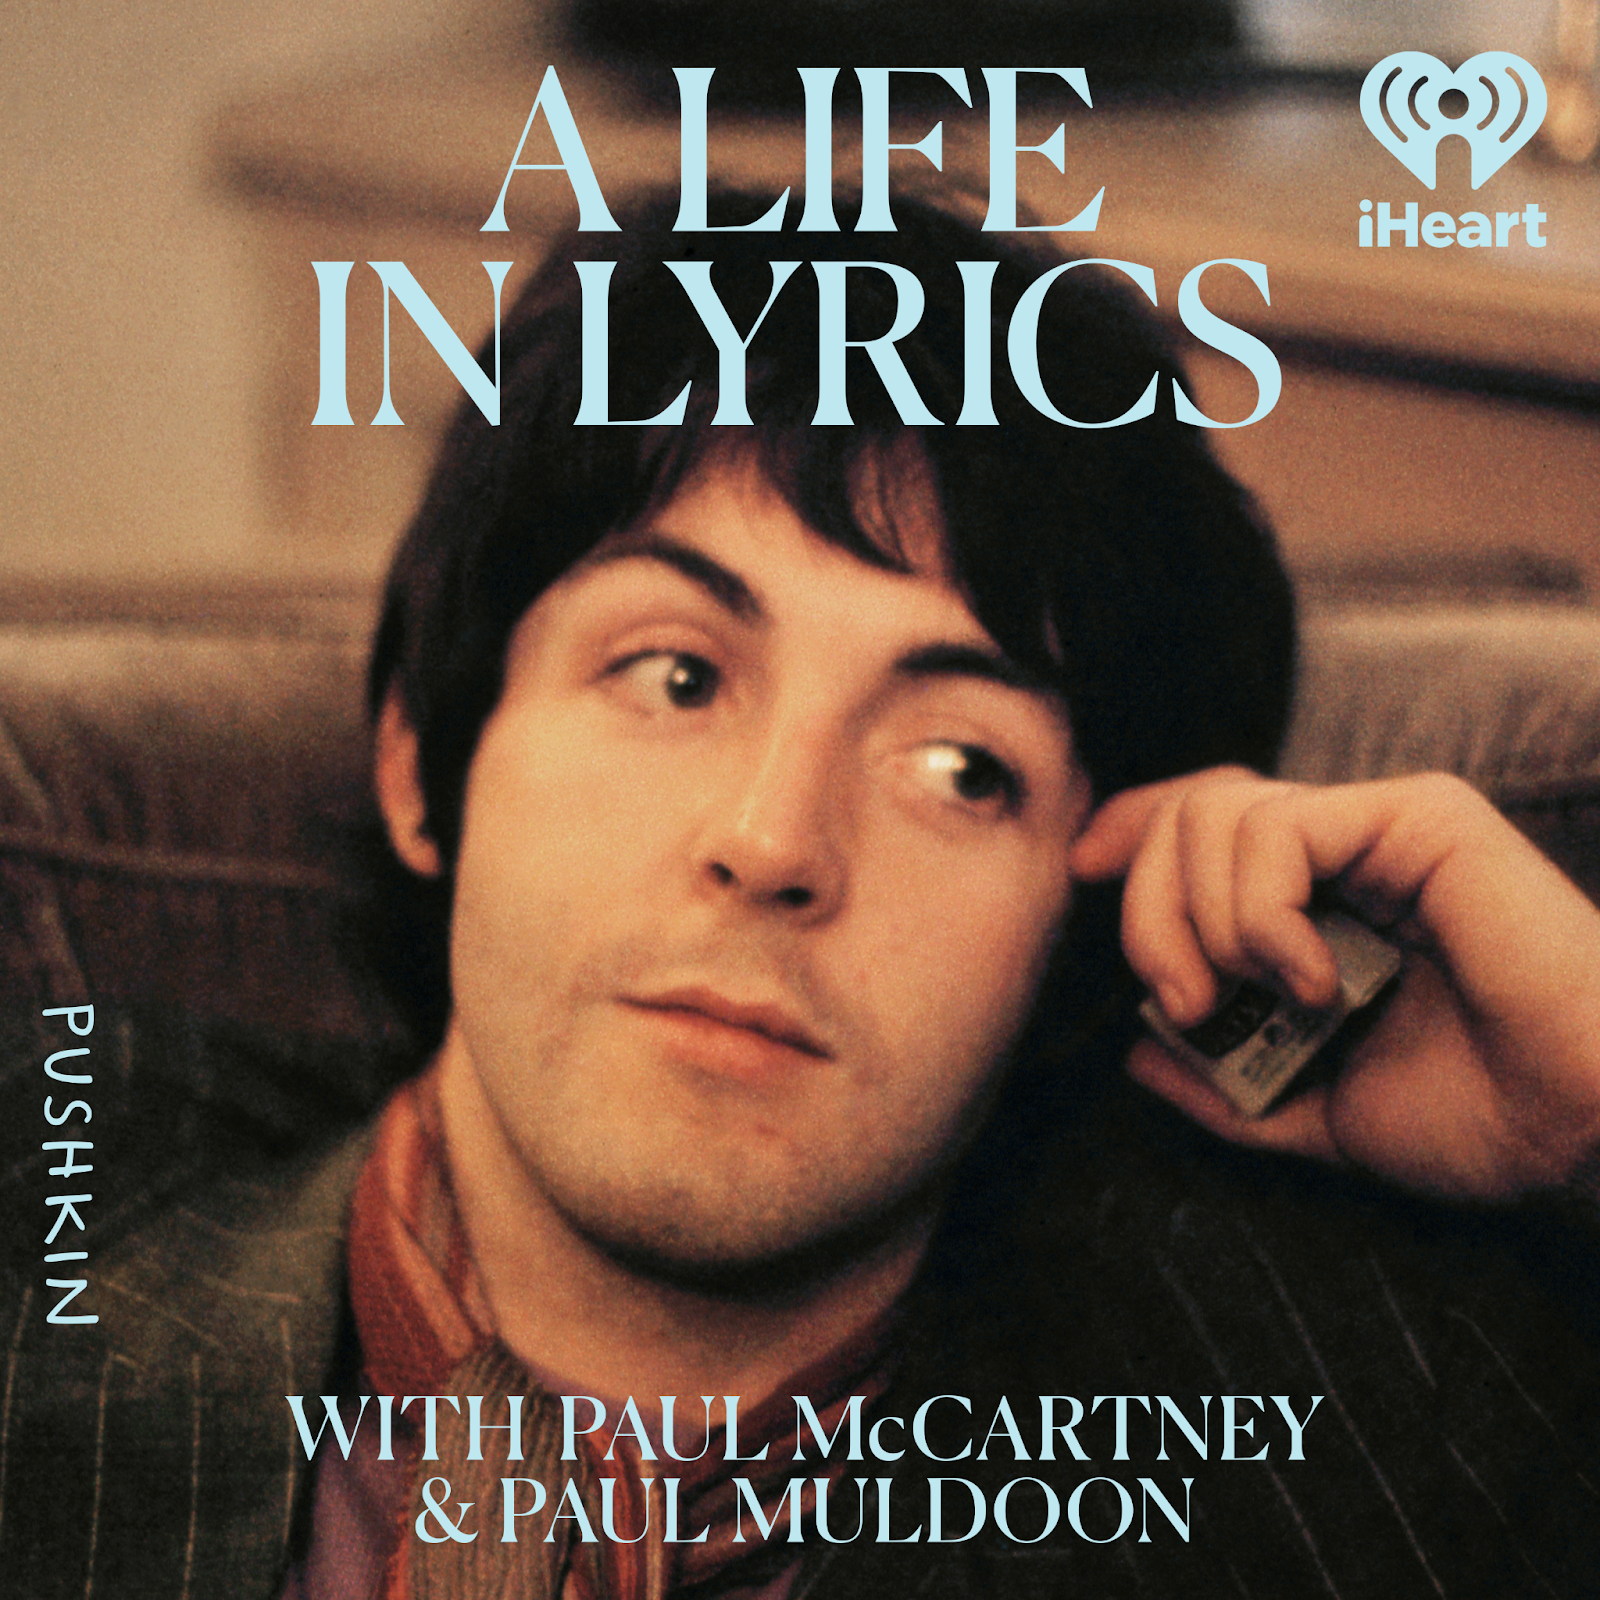  Paul McCartney Podcast Coming In September